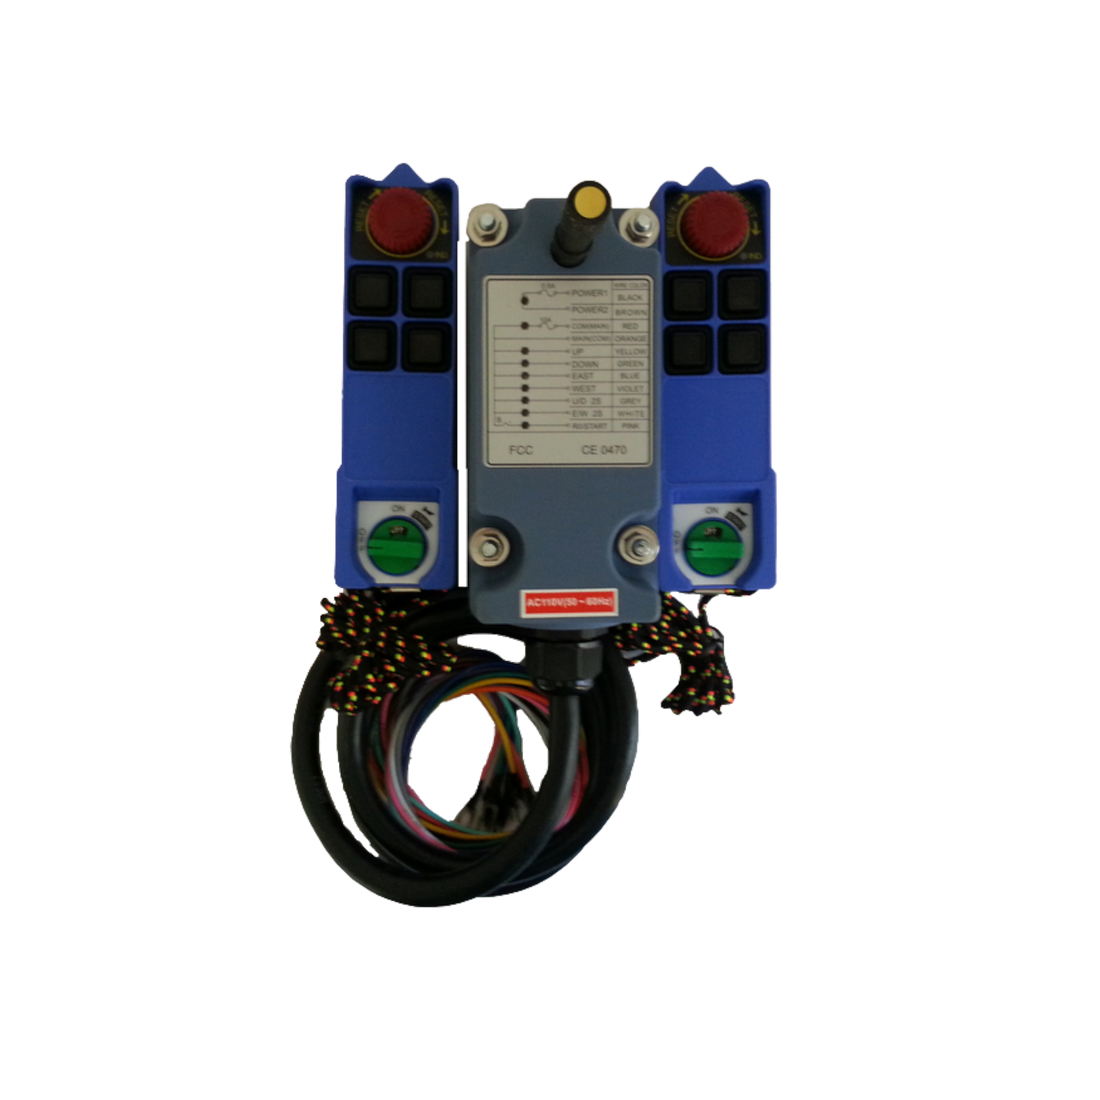 Radio Remote Control Kits (RC-3M1 & RC-2M2)